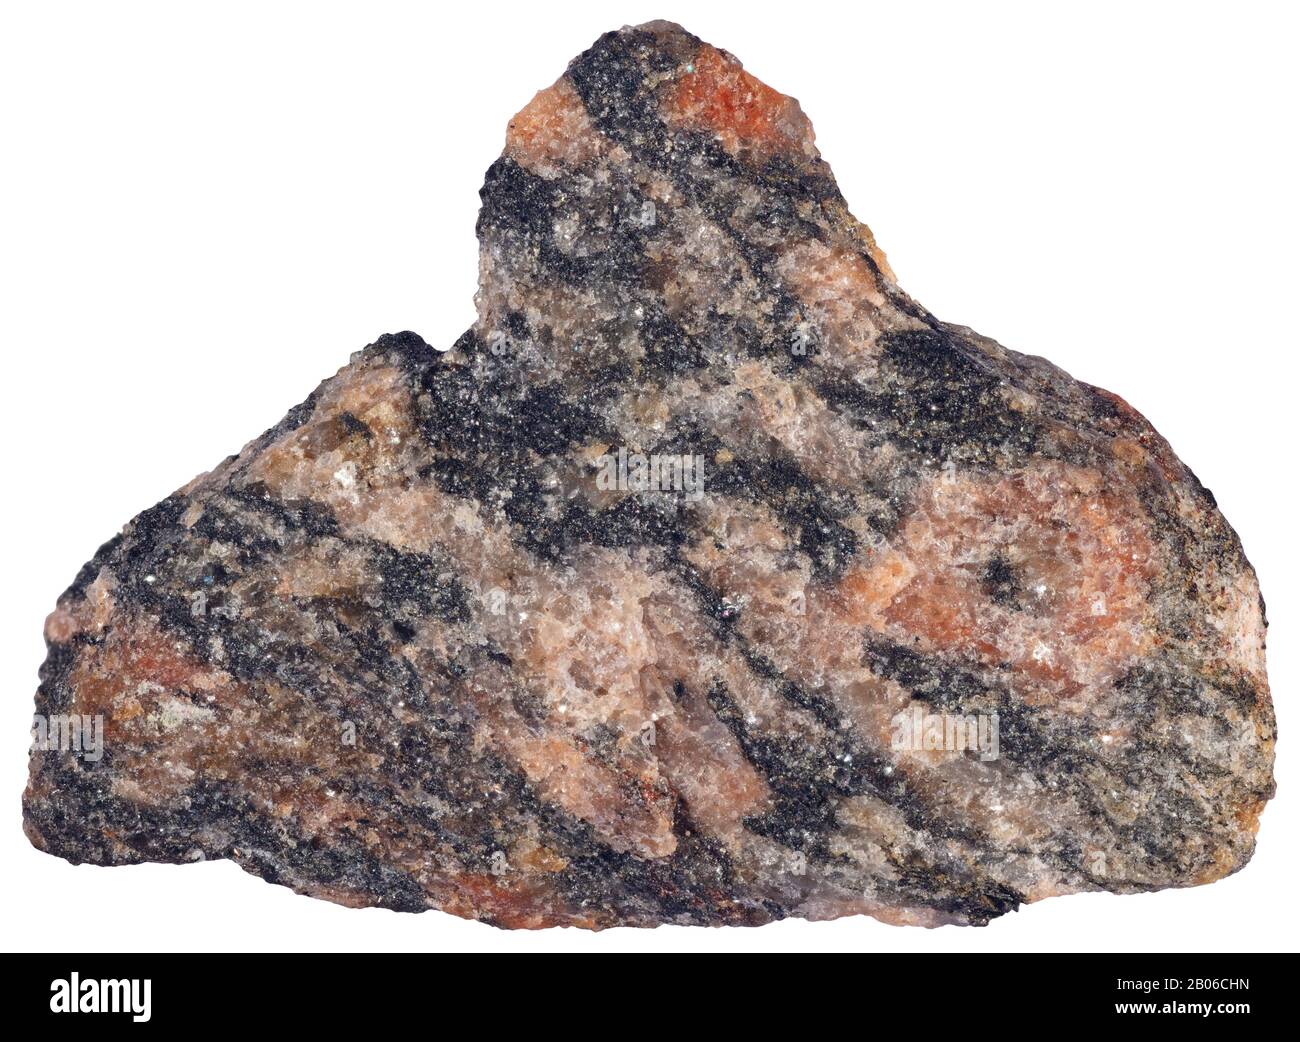 Granite de charme, Plutonique, Ottawa un granite contenant de la hornblende, un rocher plutonique felsique, généralement de l'adamellite ou de la granodiorite, contenant un amph Banque D'Images